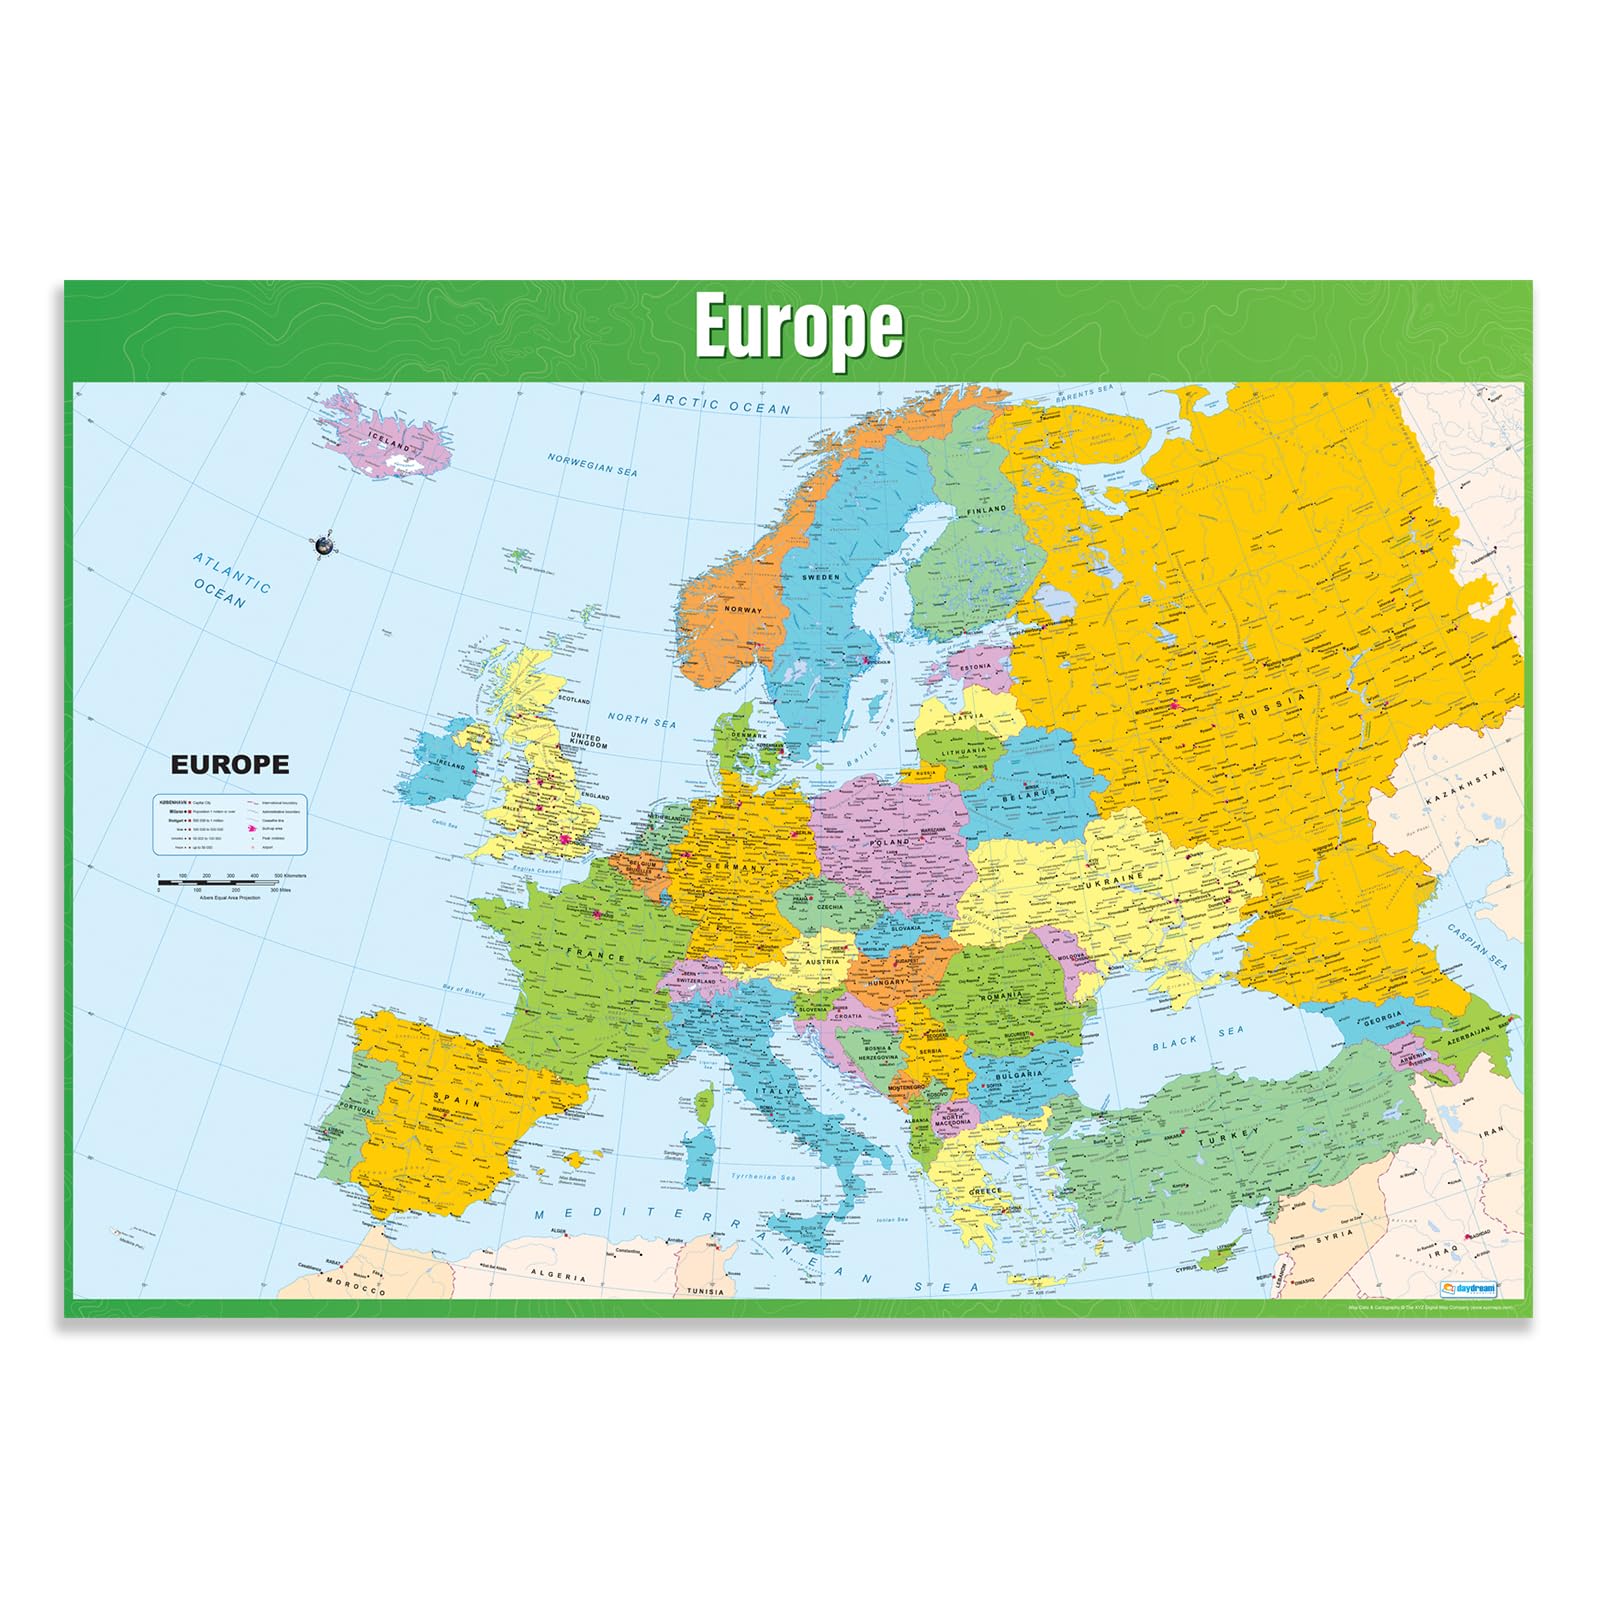 Daydream Education Europakarte, Geographie-Poster, laminiertes Glanzpapier, 85 x 59,4 cm (DIN A1), für den Klassenraum (evtl. nicht in dt. Sprache)